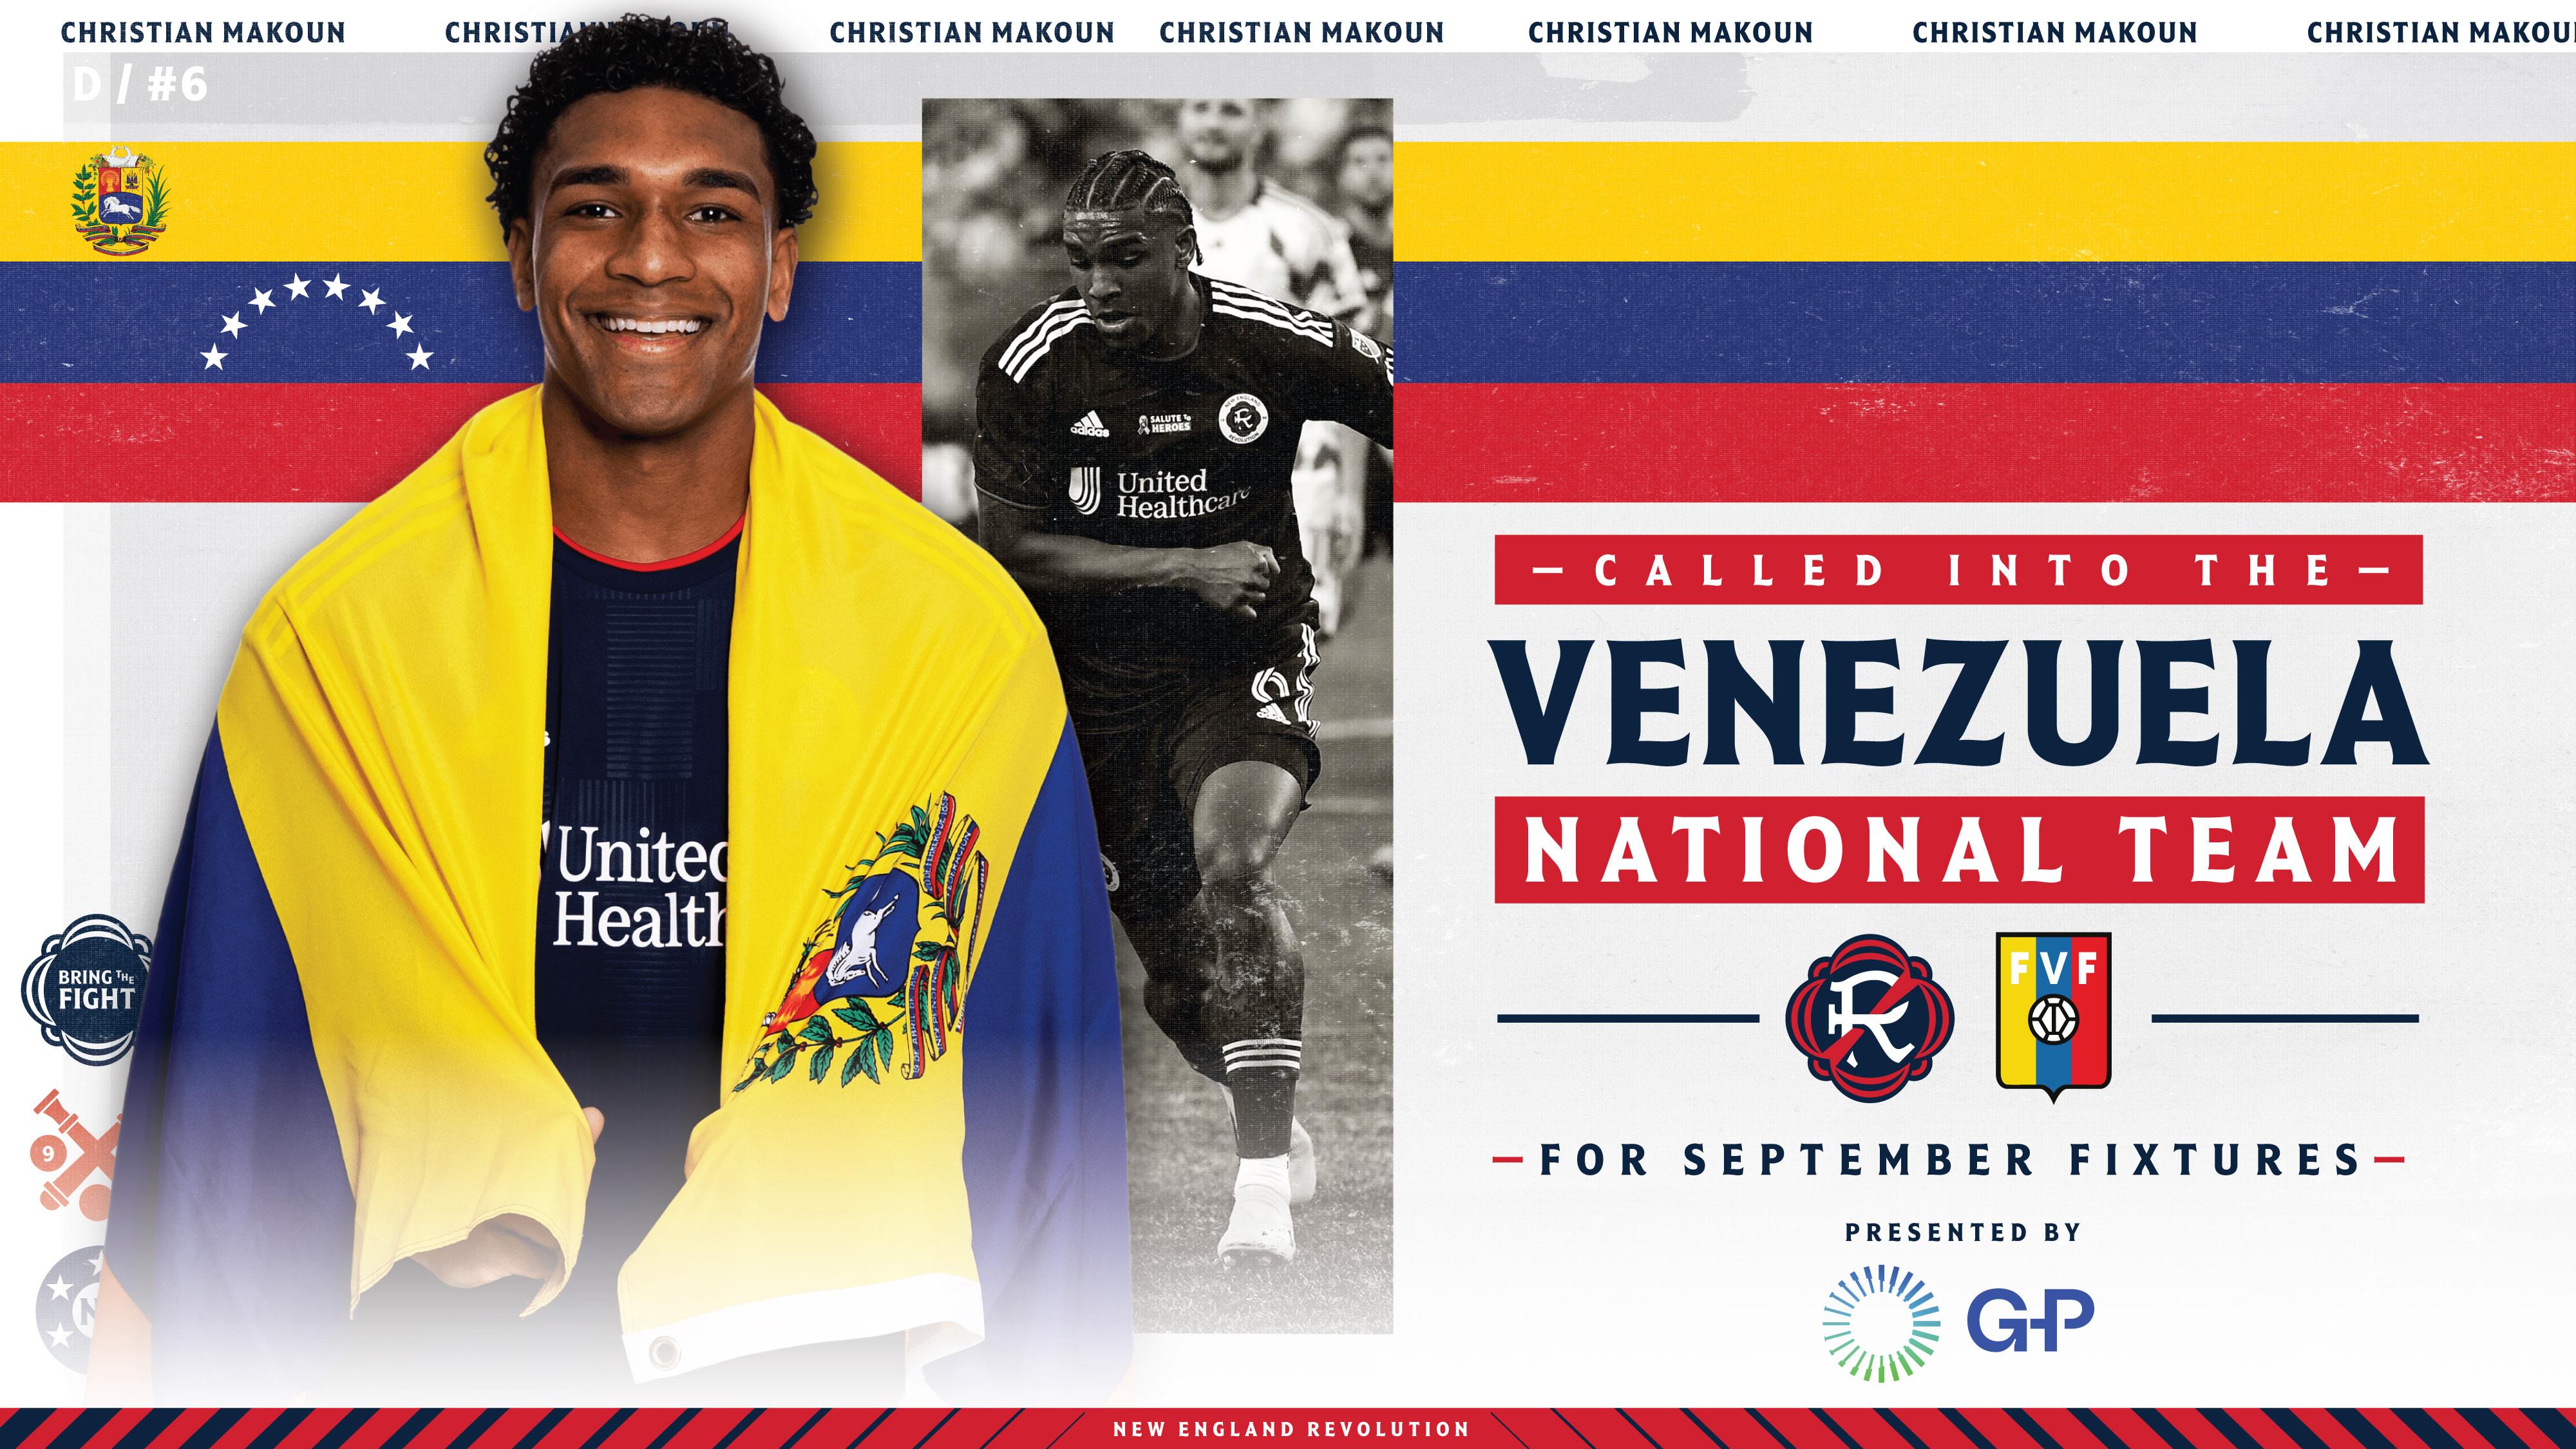 Christian Makoun de Revolución fue incluido en la lista de Venezuela para las eliminatorias de la Copa Mundial de la FIFA de septiembre